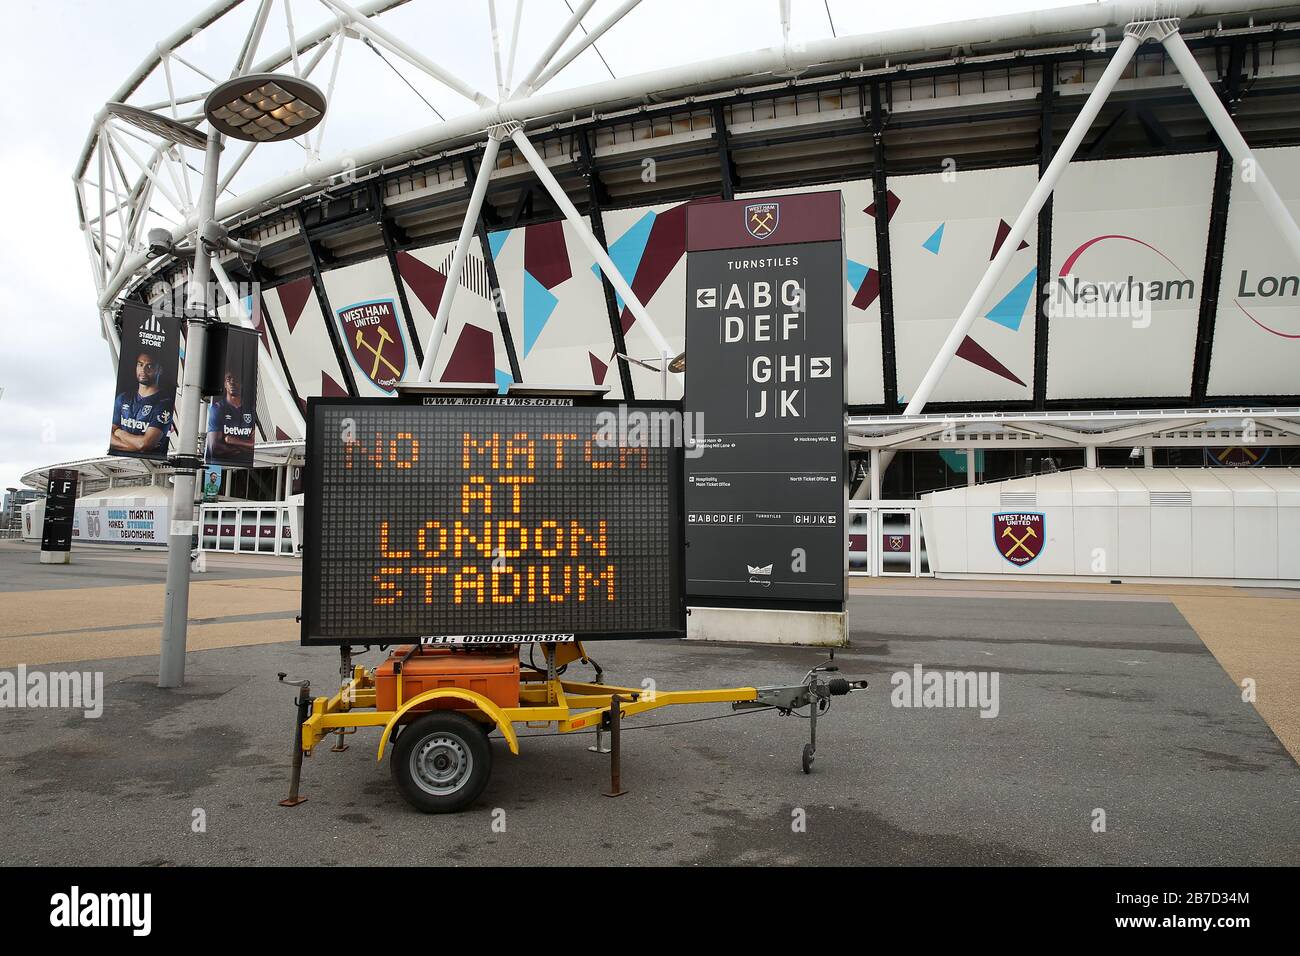 Vue d'un panneau LED informant les fans que le match est en dehors du stade de Londres, où se trouve le club de football West Ham United, suite à l'annonce de vendredi selon laquelle la Premier League a suspendu tous les matches jusqu'au samedi 4 avril 2020. Banque D'Images